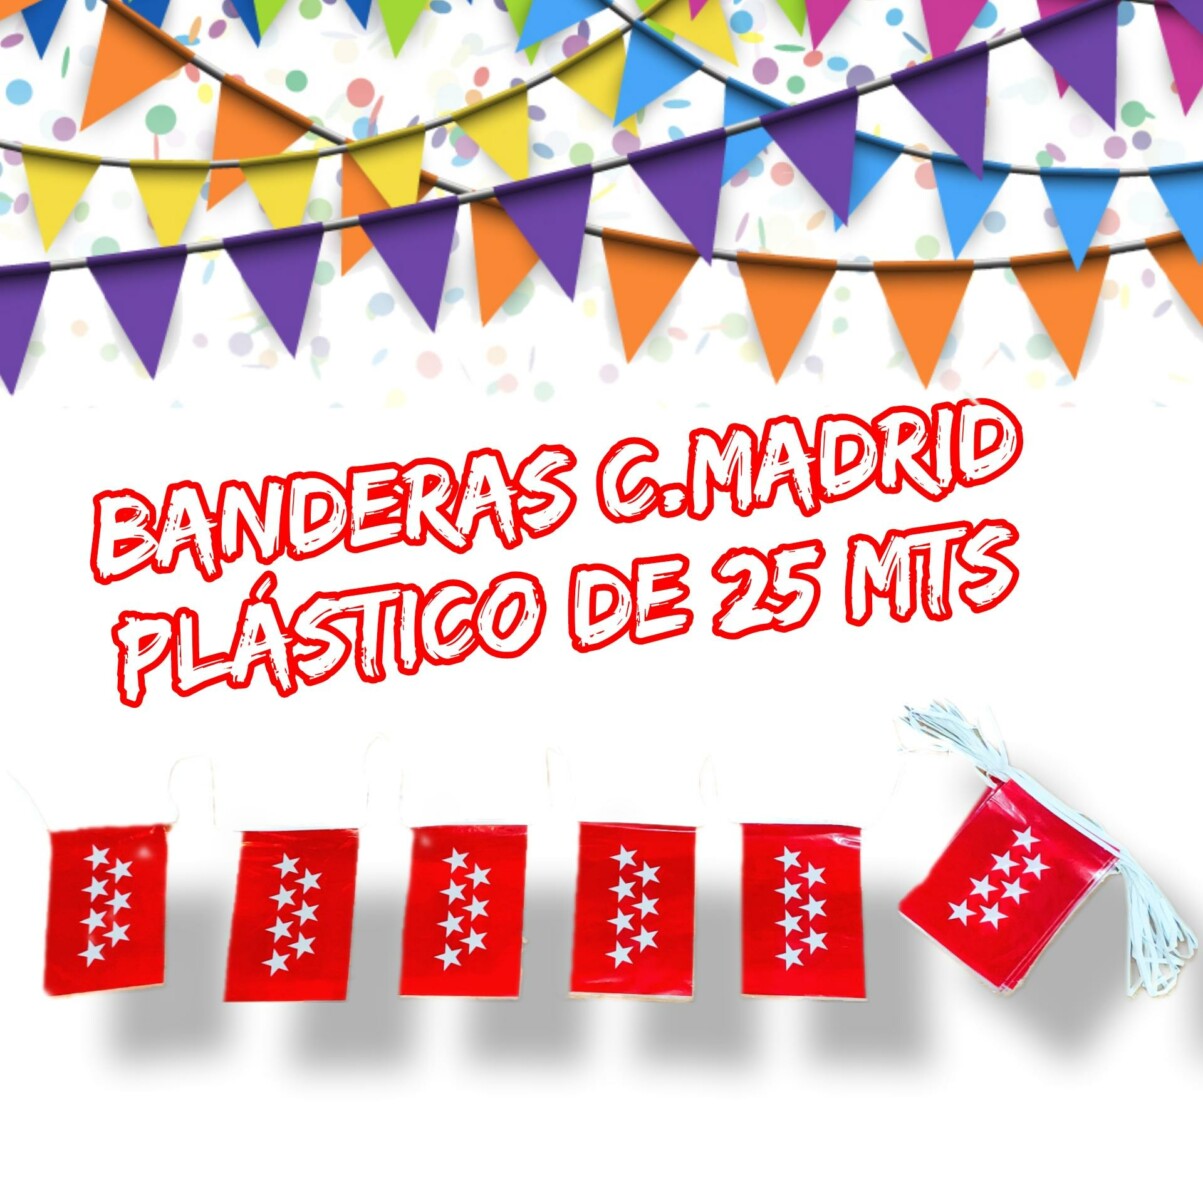 Banderas Comunidad de Madrid de Plástico 20 x 30 Tira de 25 Metros. Ech S.A - Adornos de Fiestas .